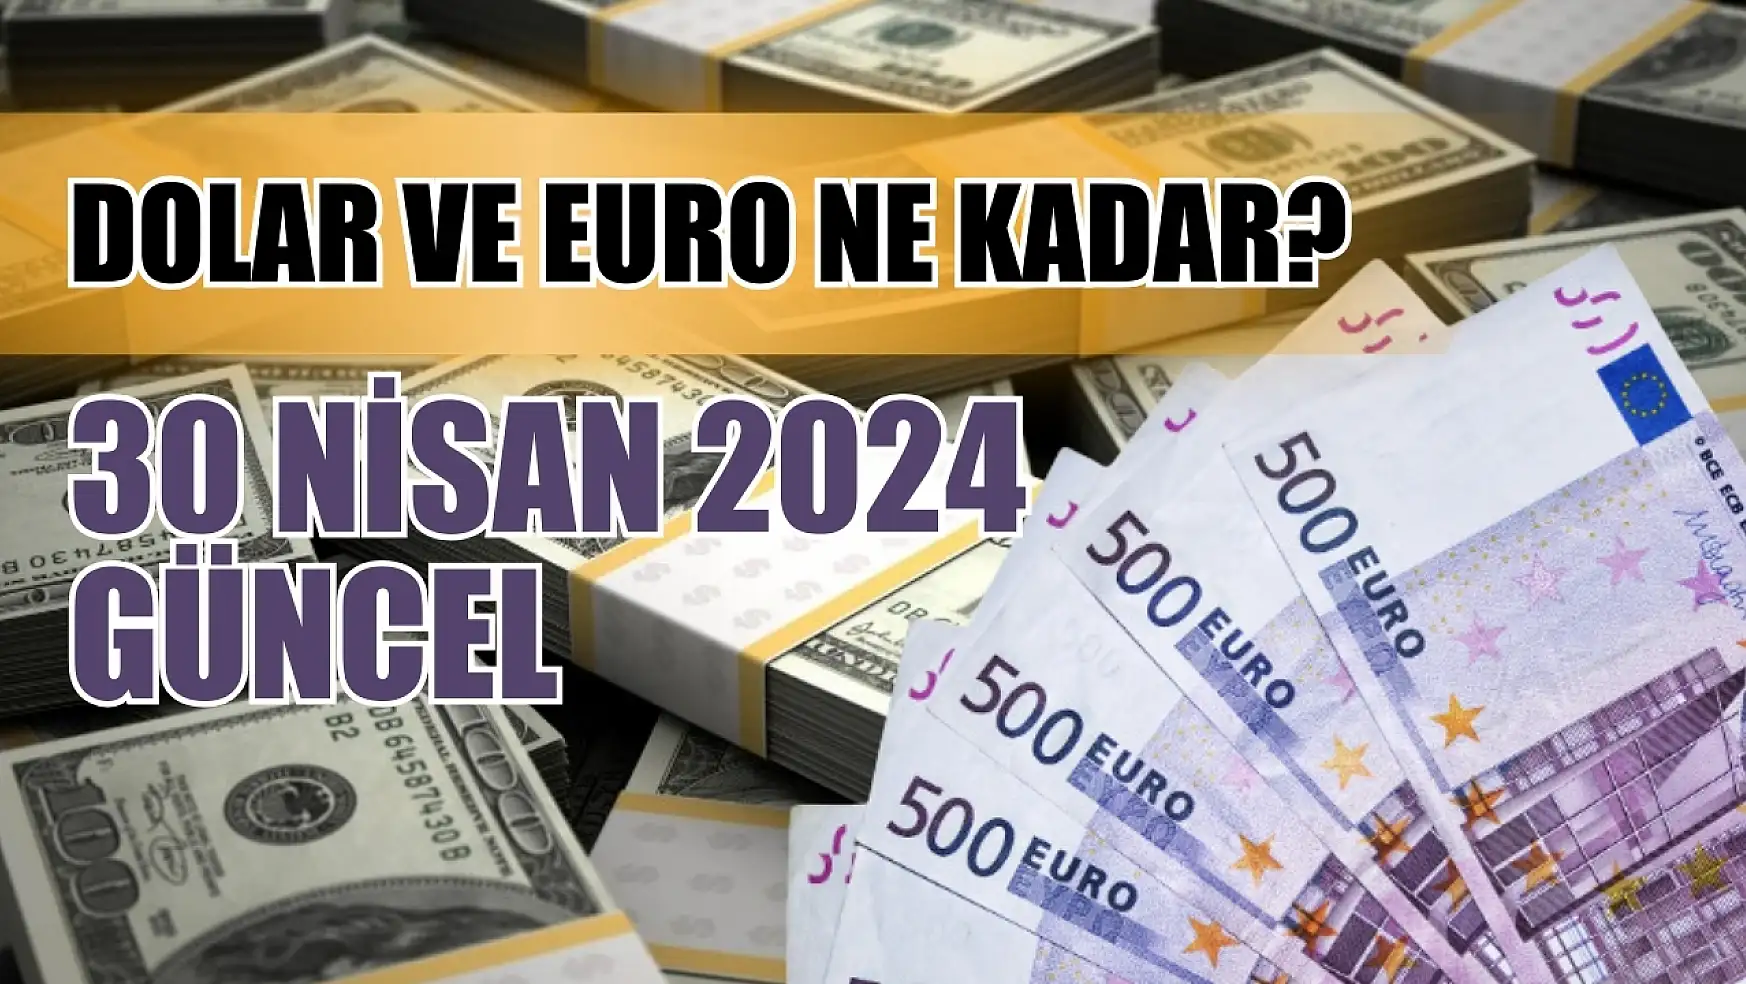 Dolar ve Euro ne kadar? 30 Nisan 2024 Güncel 